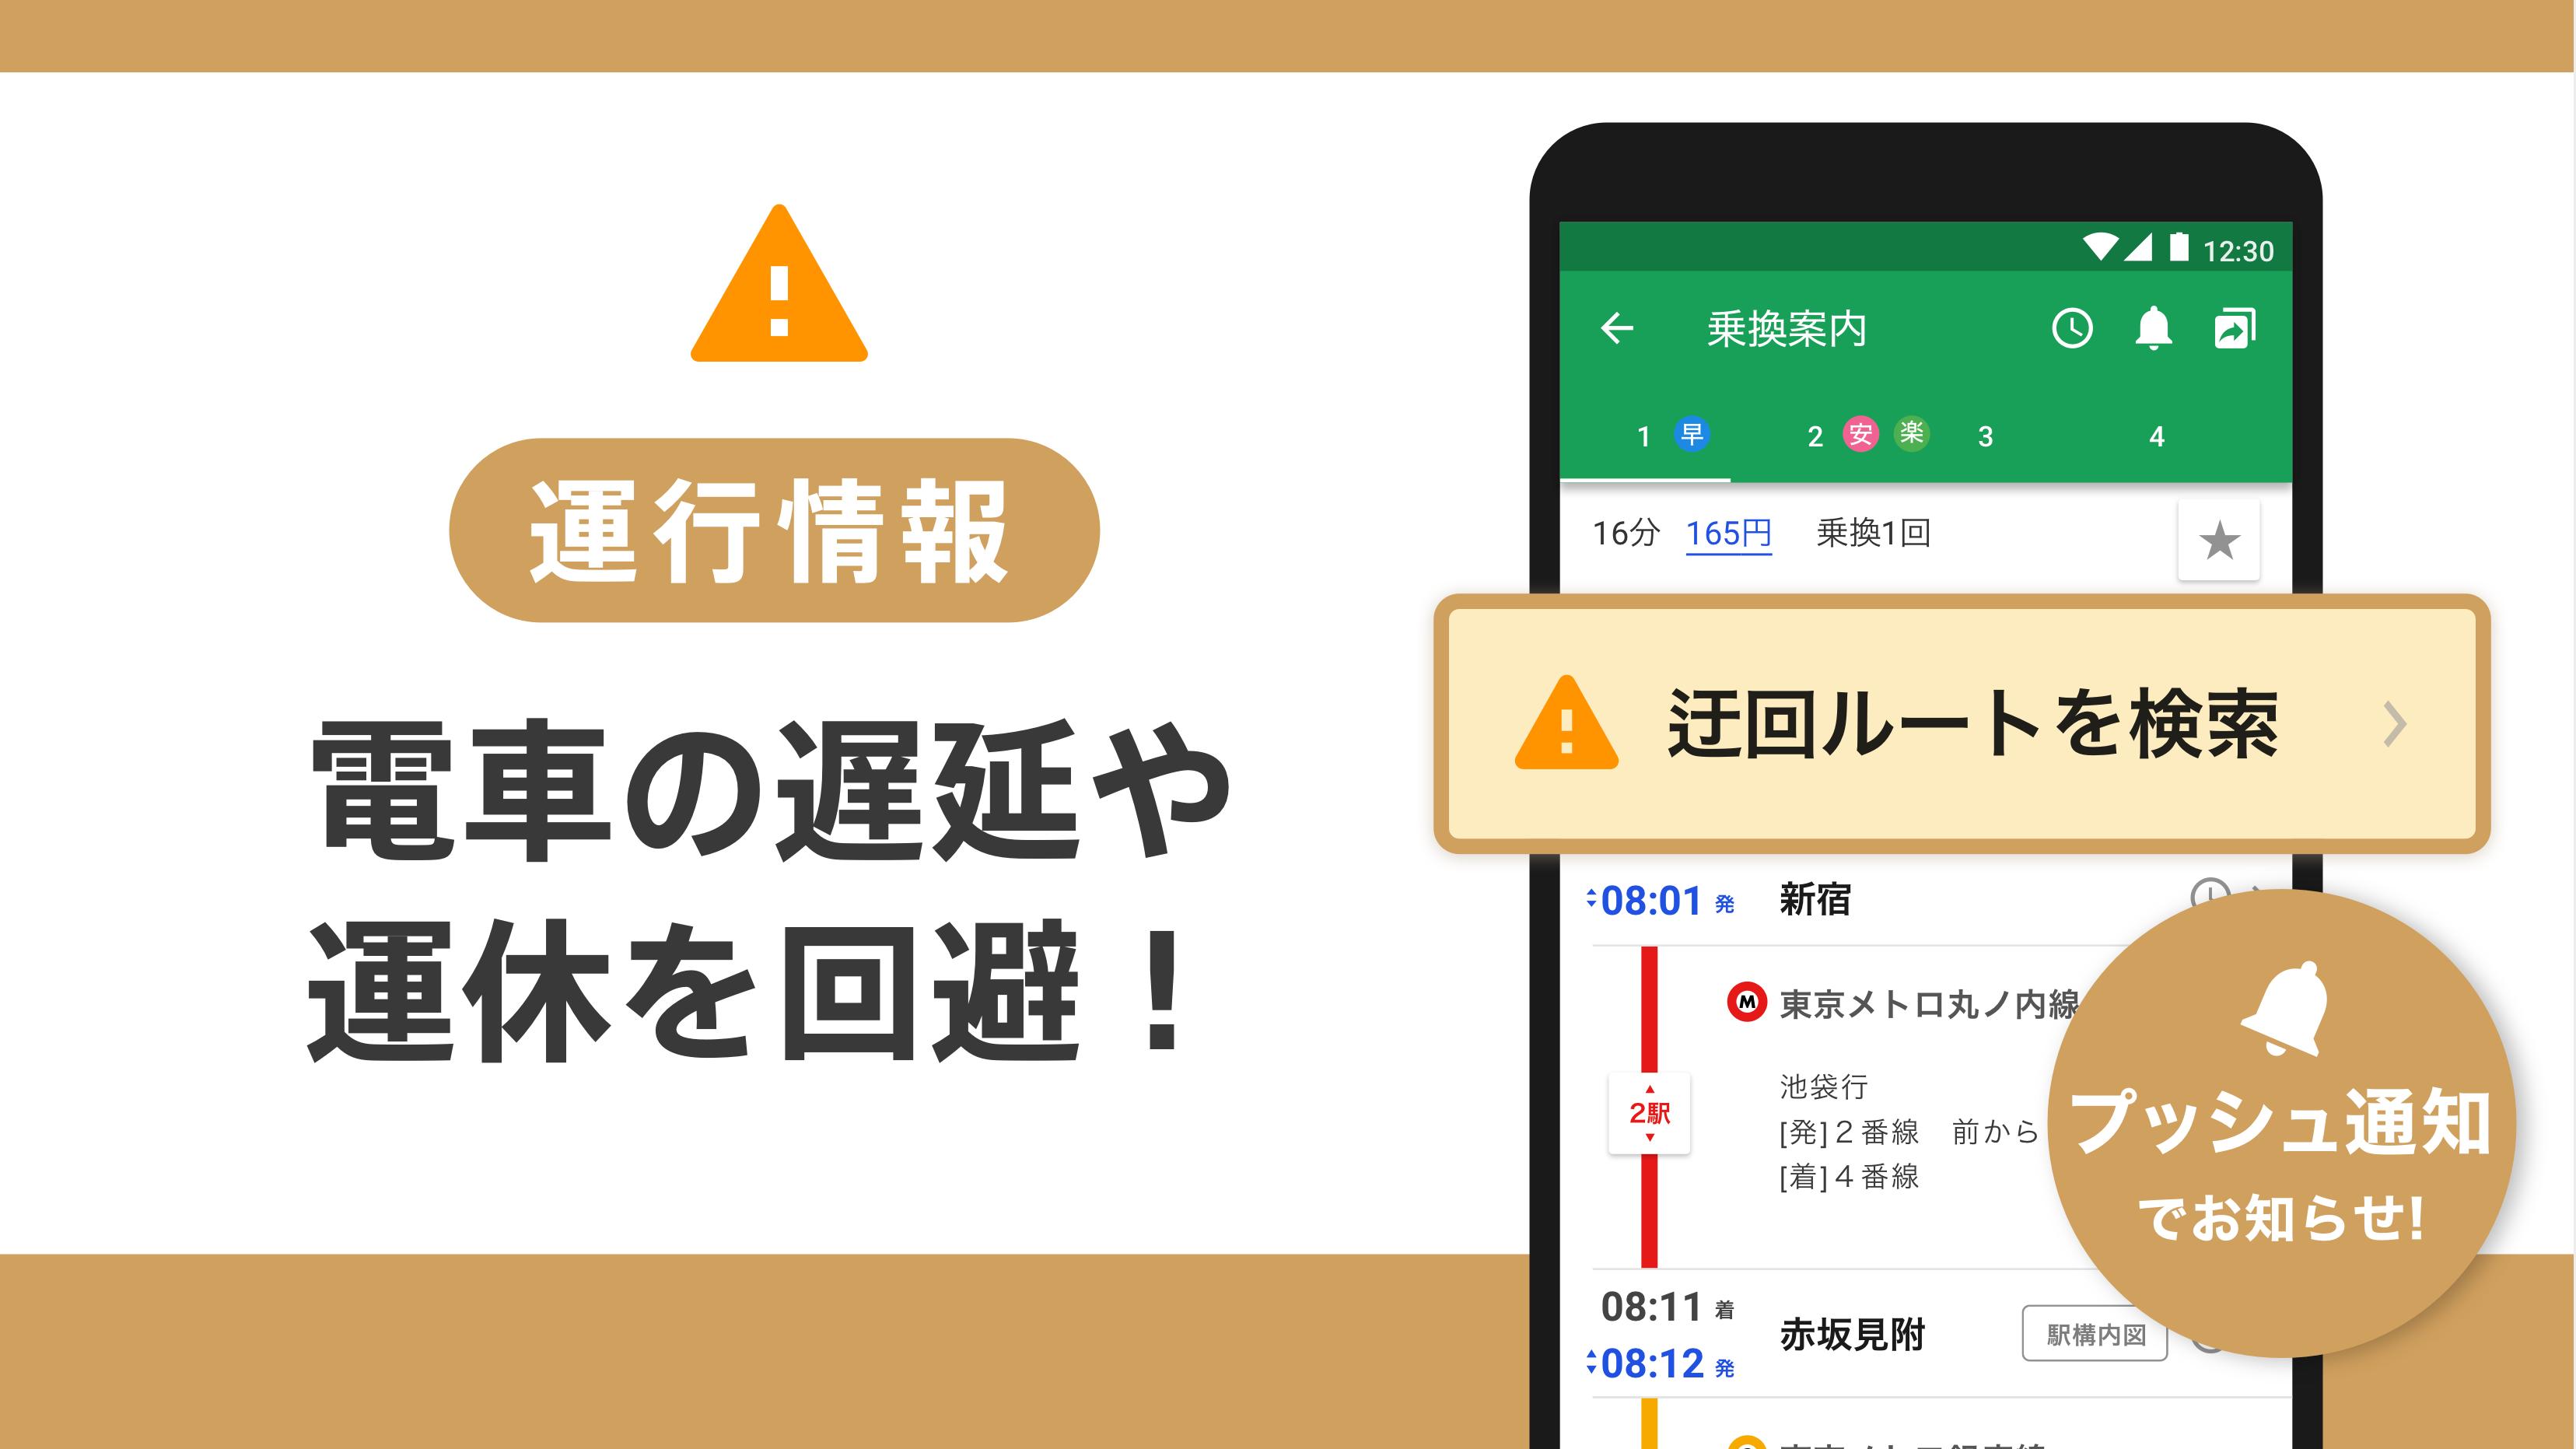 일본의 전철 환승 검색 앱 - 新幹線の切符、飛行機の航空券予約・格安検索、青春18きっぷにも対応